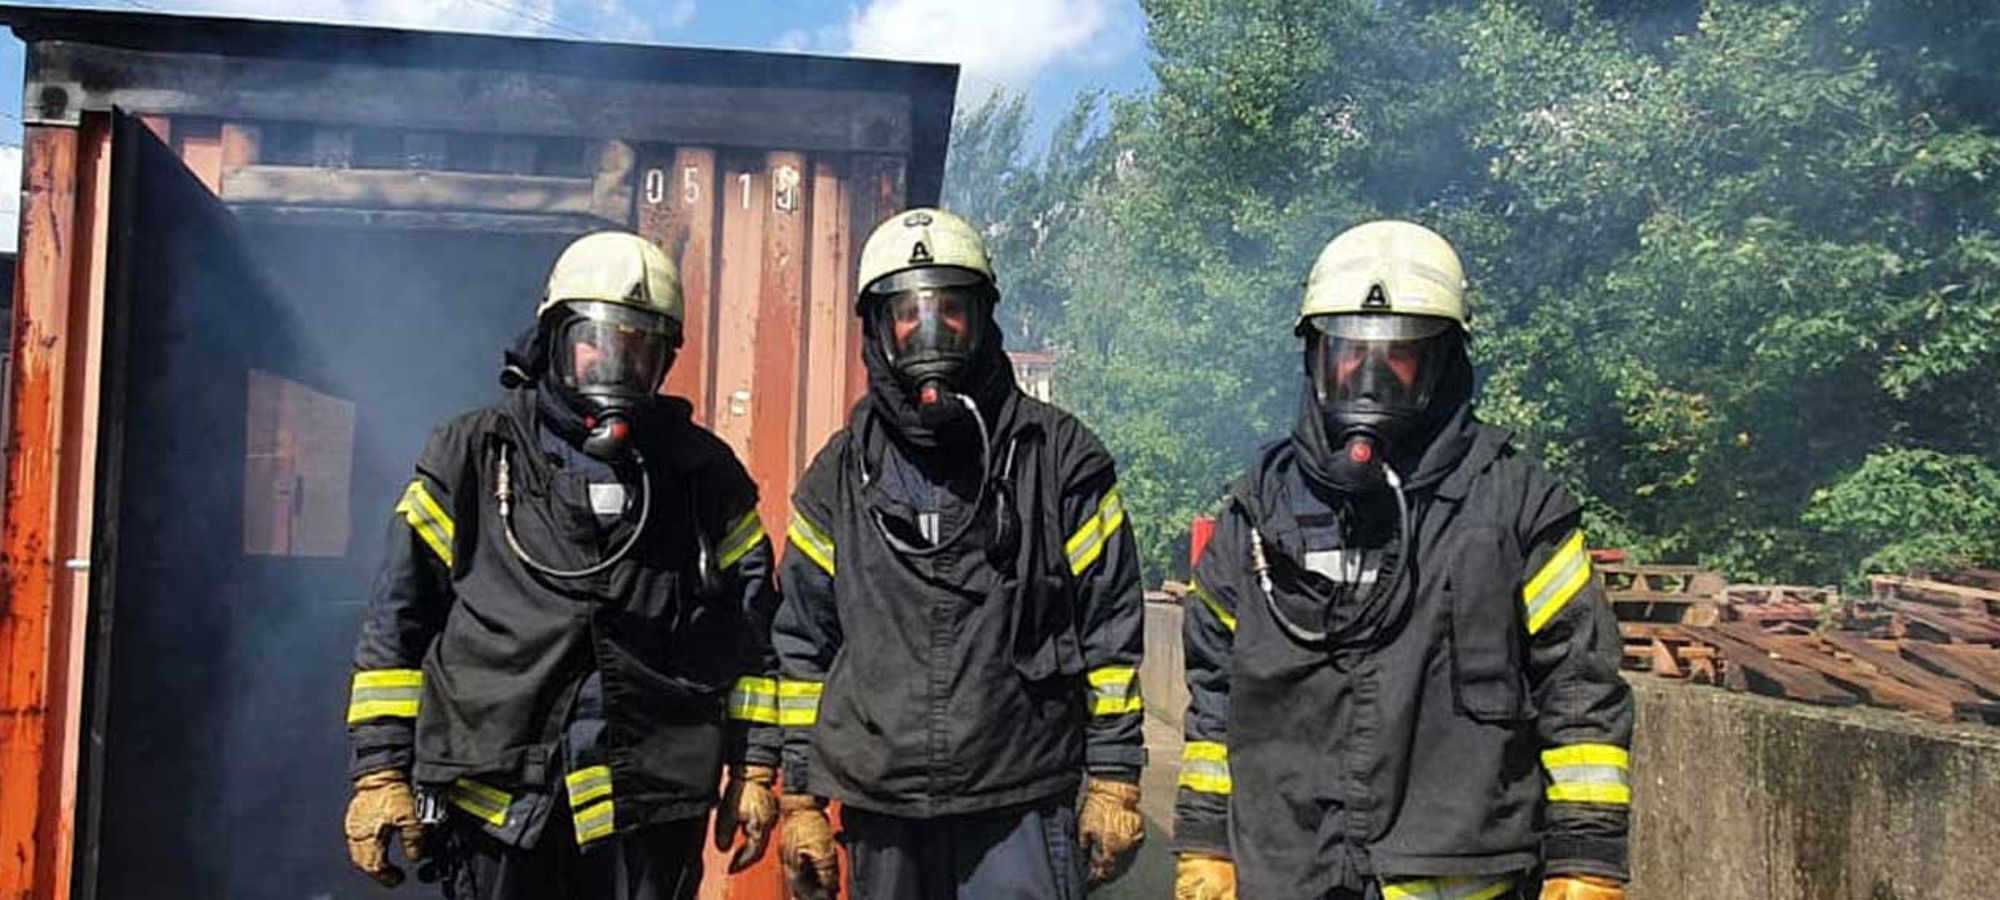 Ausbildung im Brandübungscontainer in Brokdorf